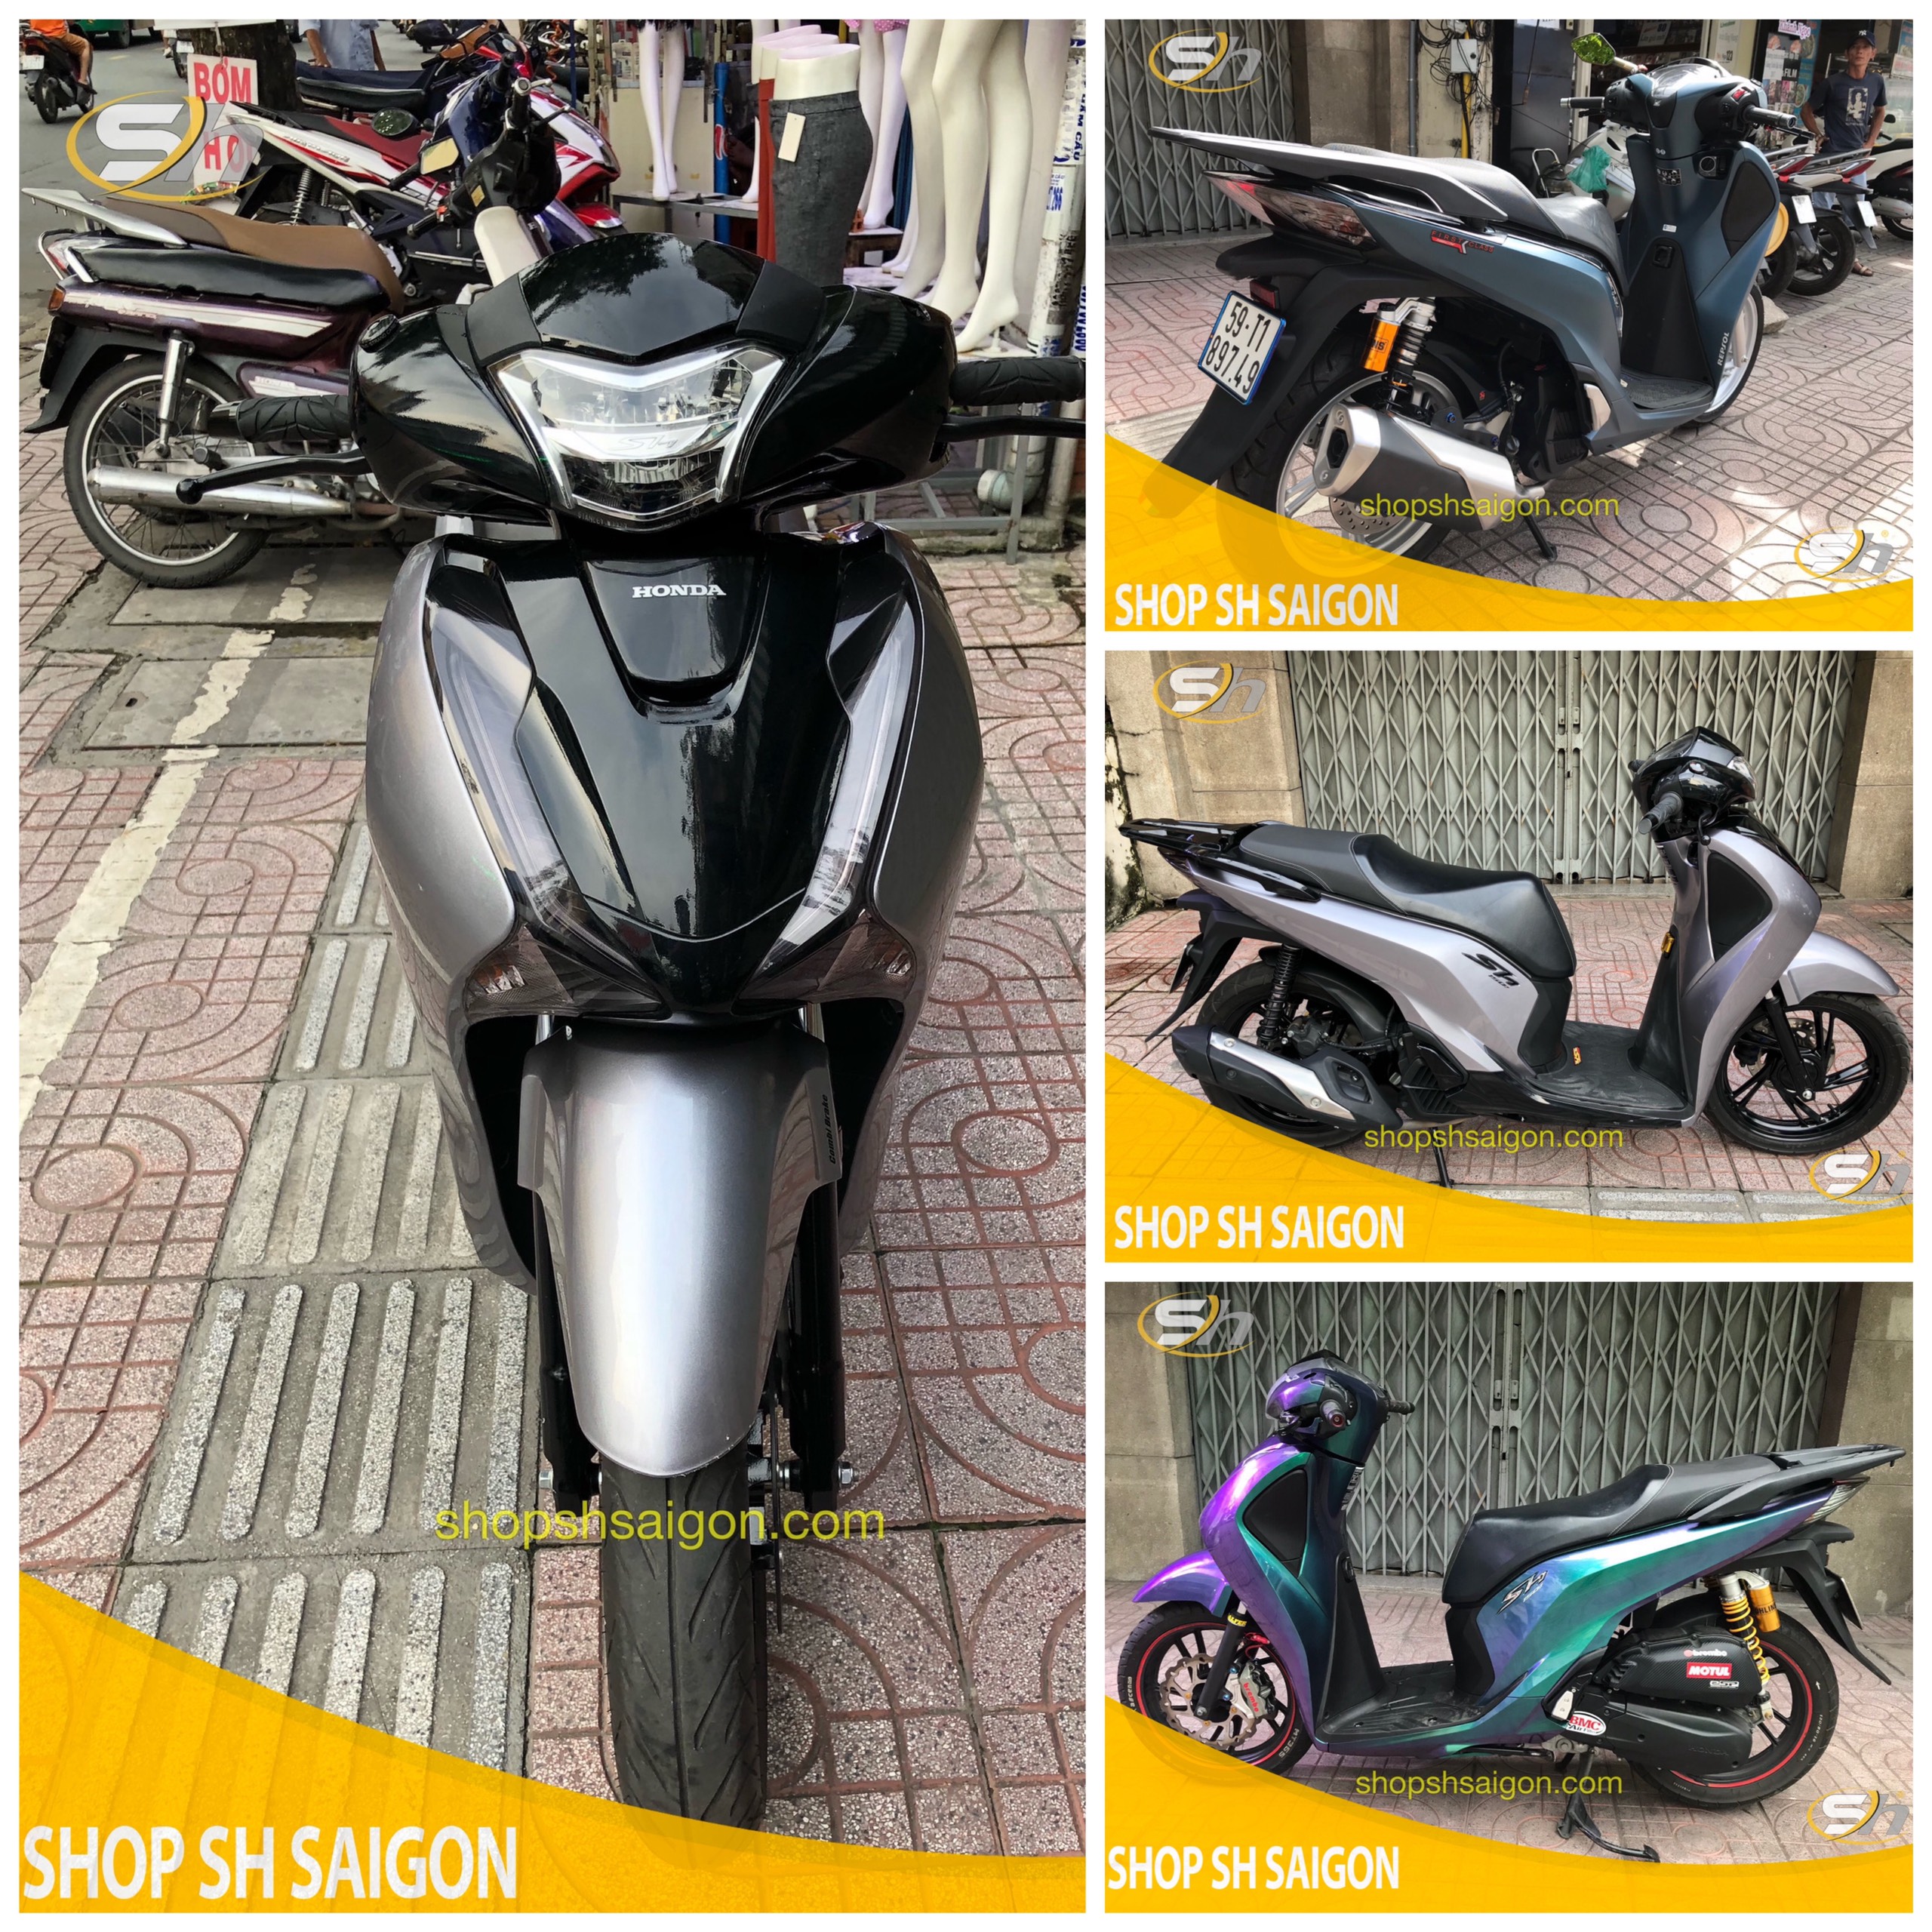 Tổng hợp Mẫu xe và đồ chơi xe được anh em biker ưa thích tại Shop SH Sài Gòn 16